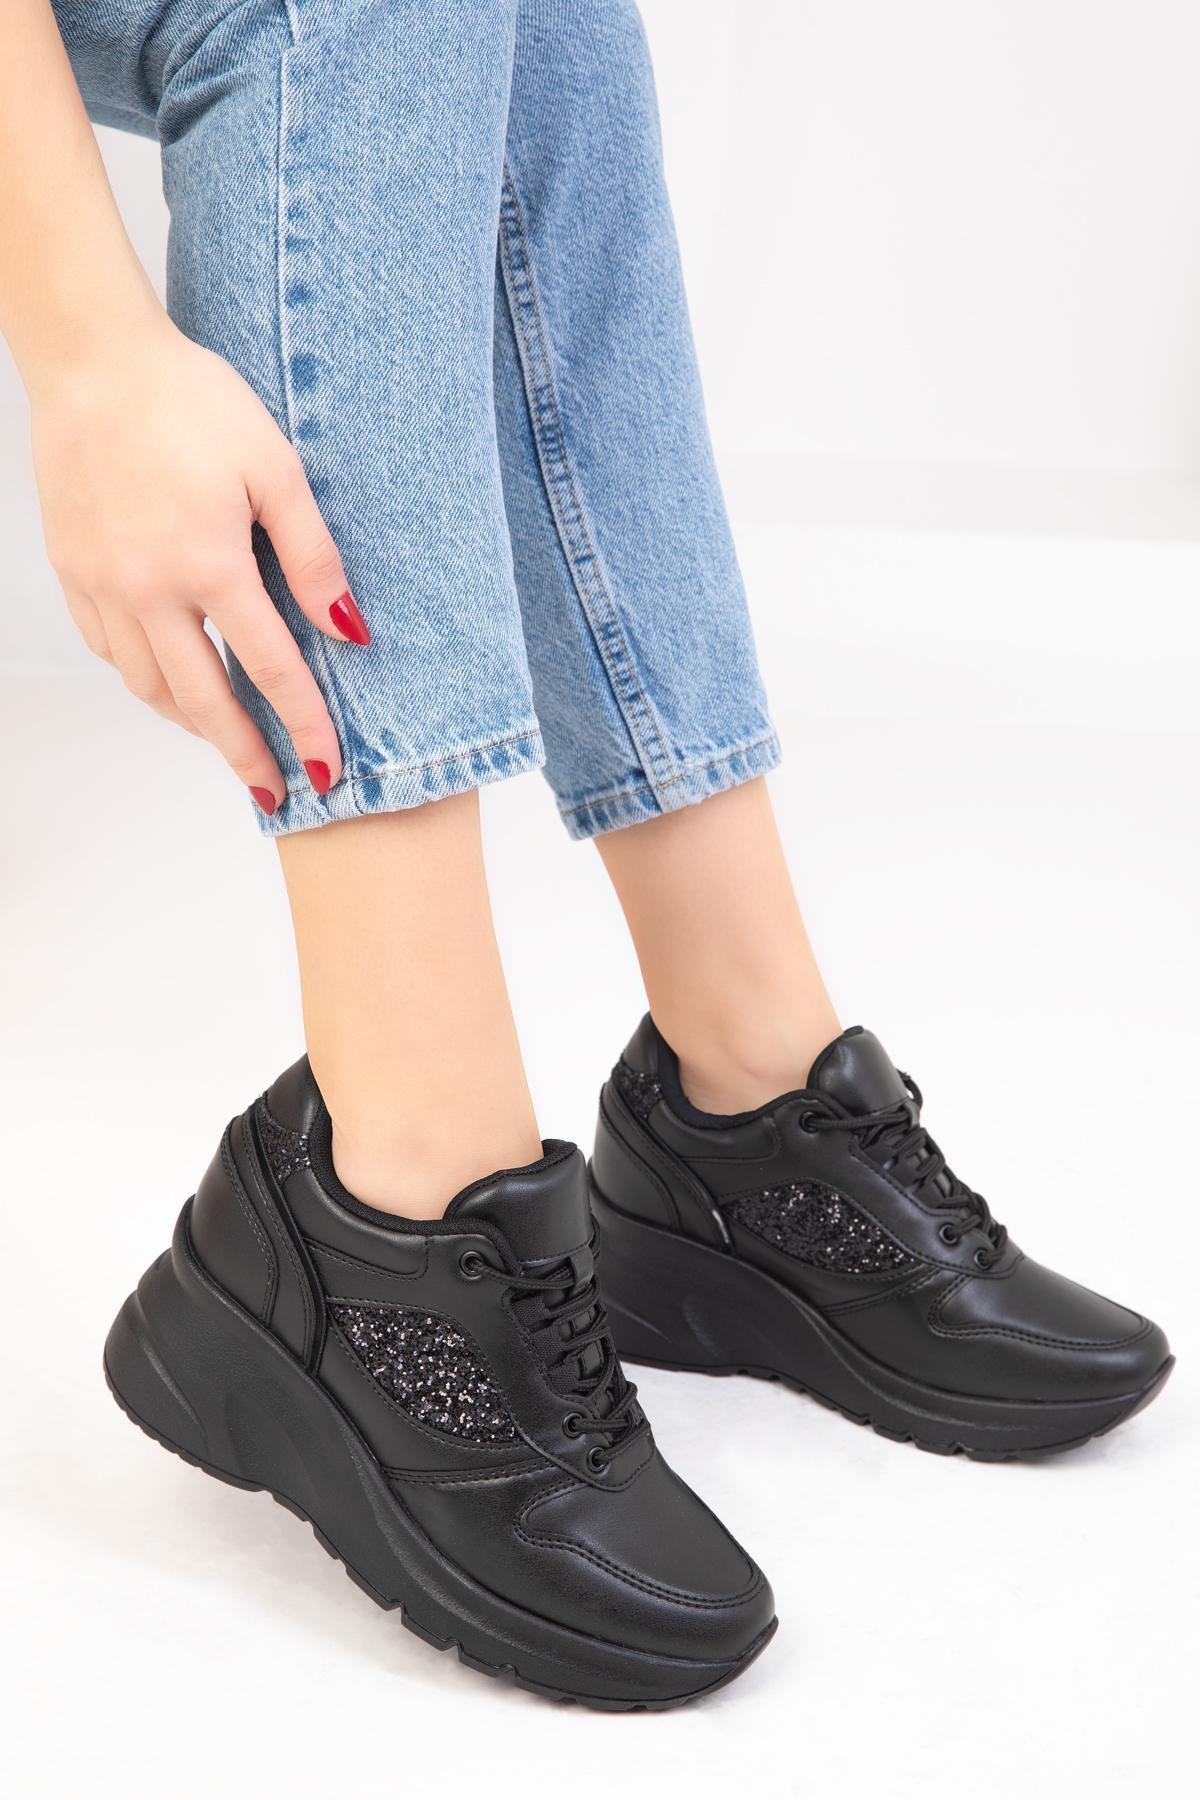 SOHO - Black Leather Sneaker